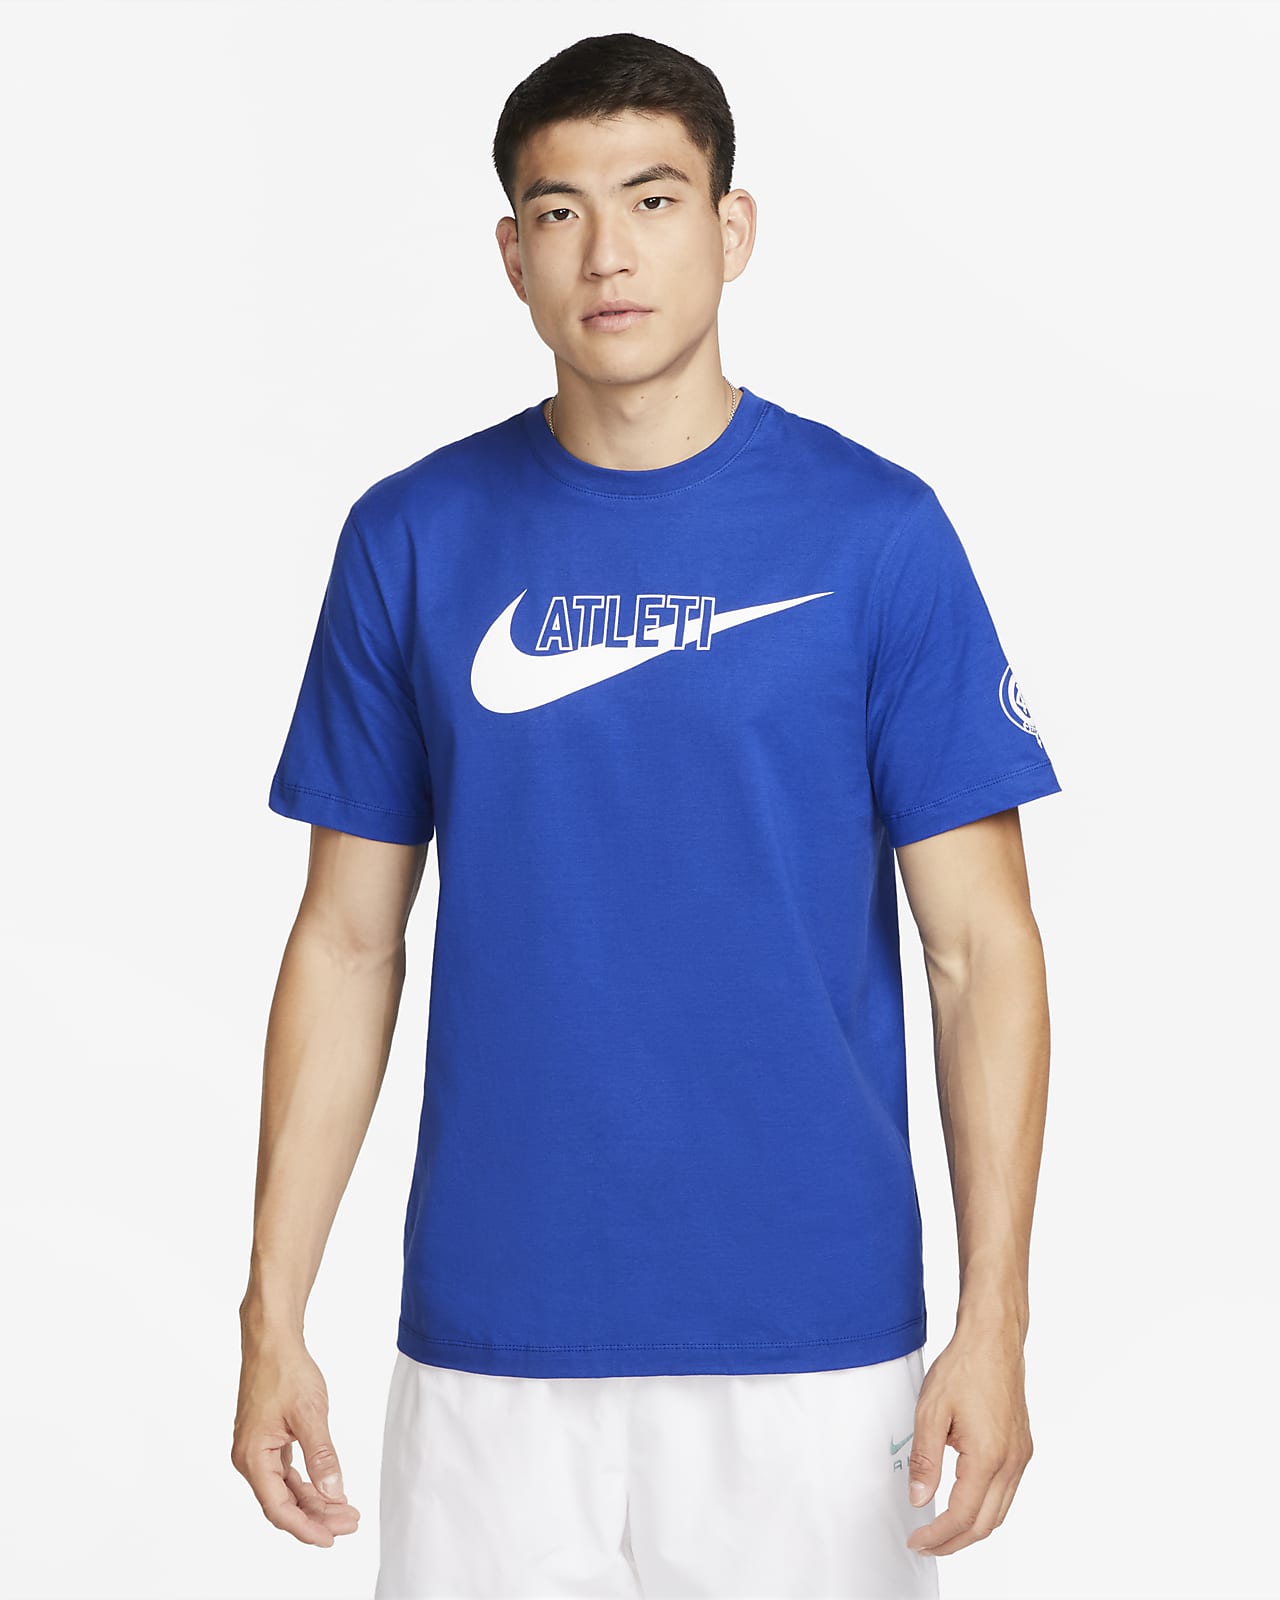 T-shirt Club Atlético de Madrid Swoosh Nike för män